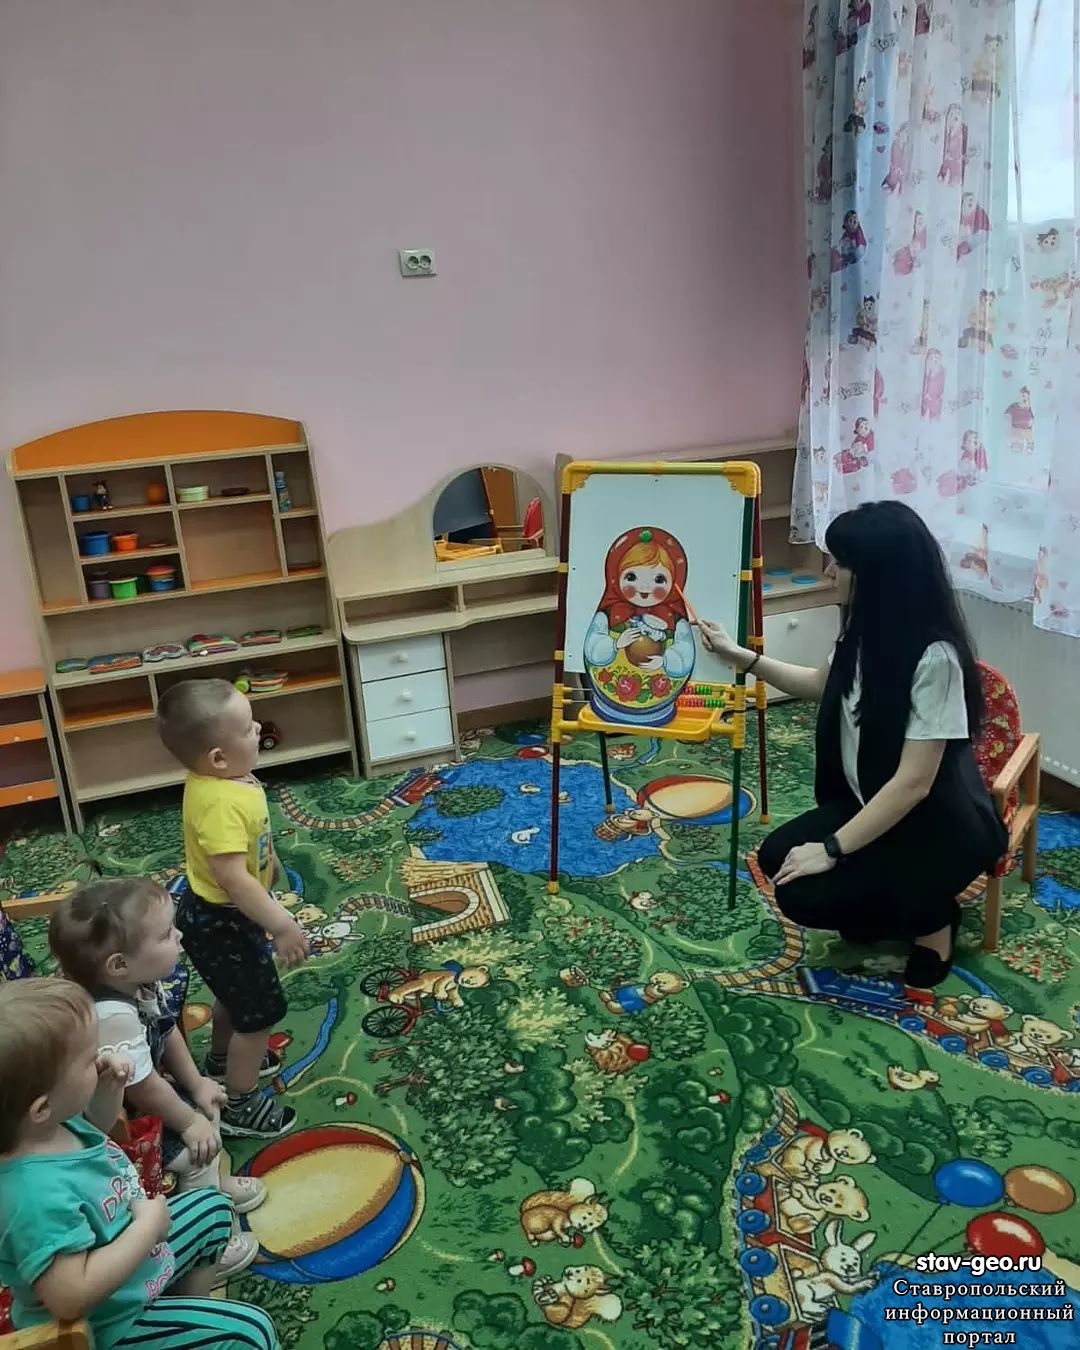 Ознакомление дошкольников с русскими народными традициями и семейными ценностями